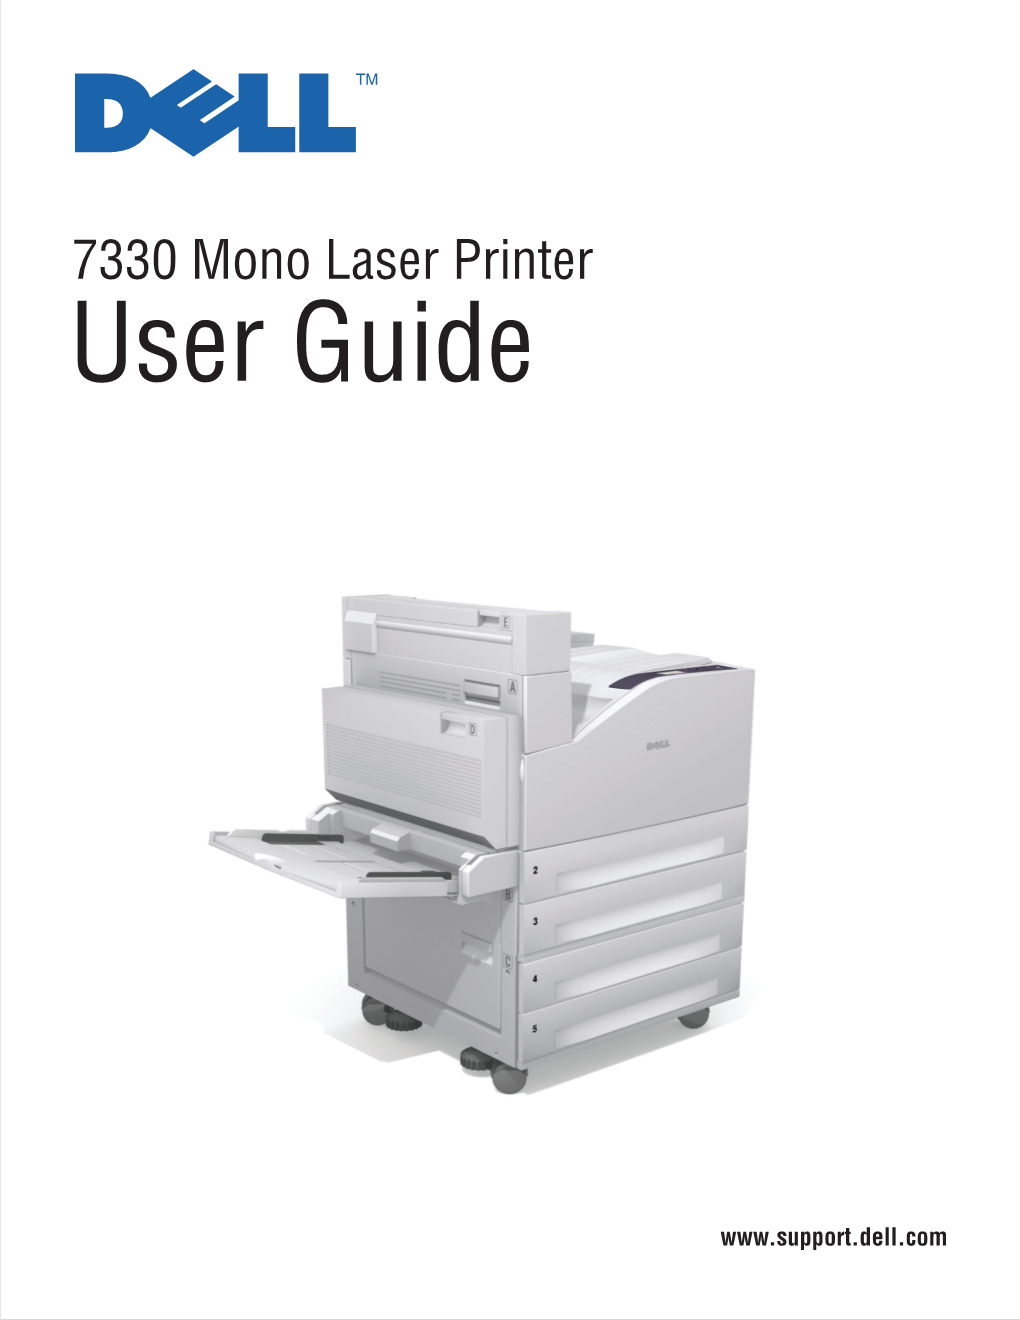 Dell 7330 Mono Laser Printer User Guide